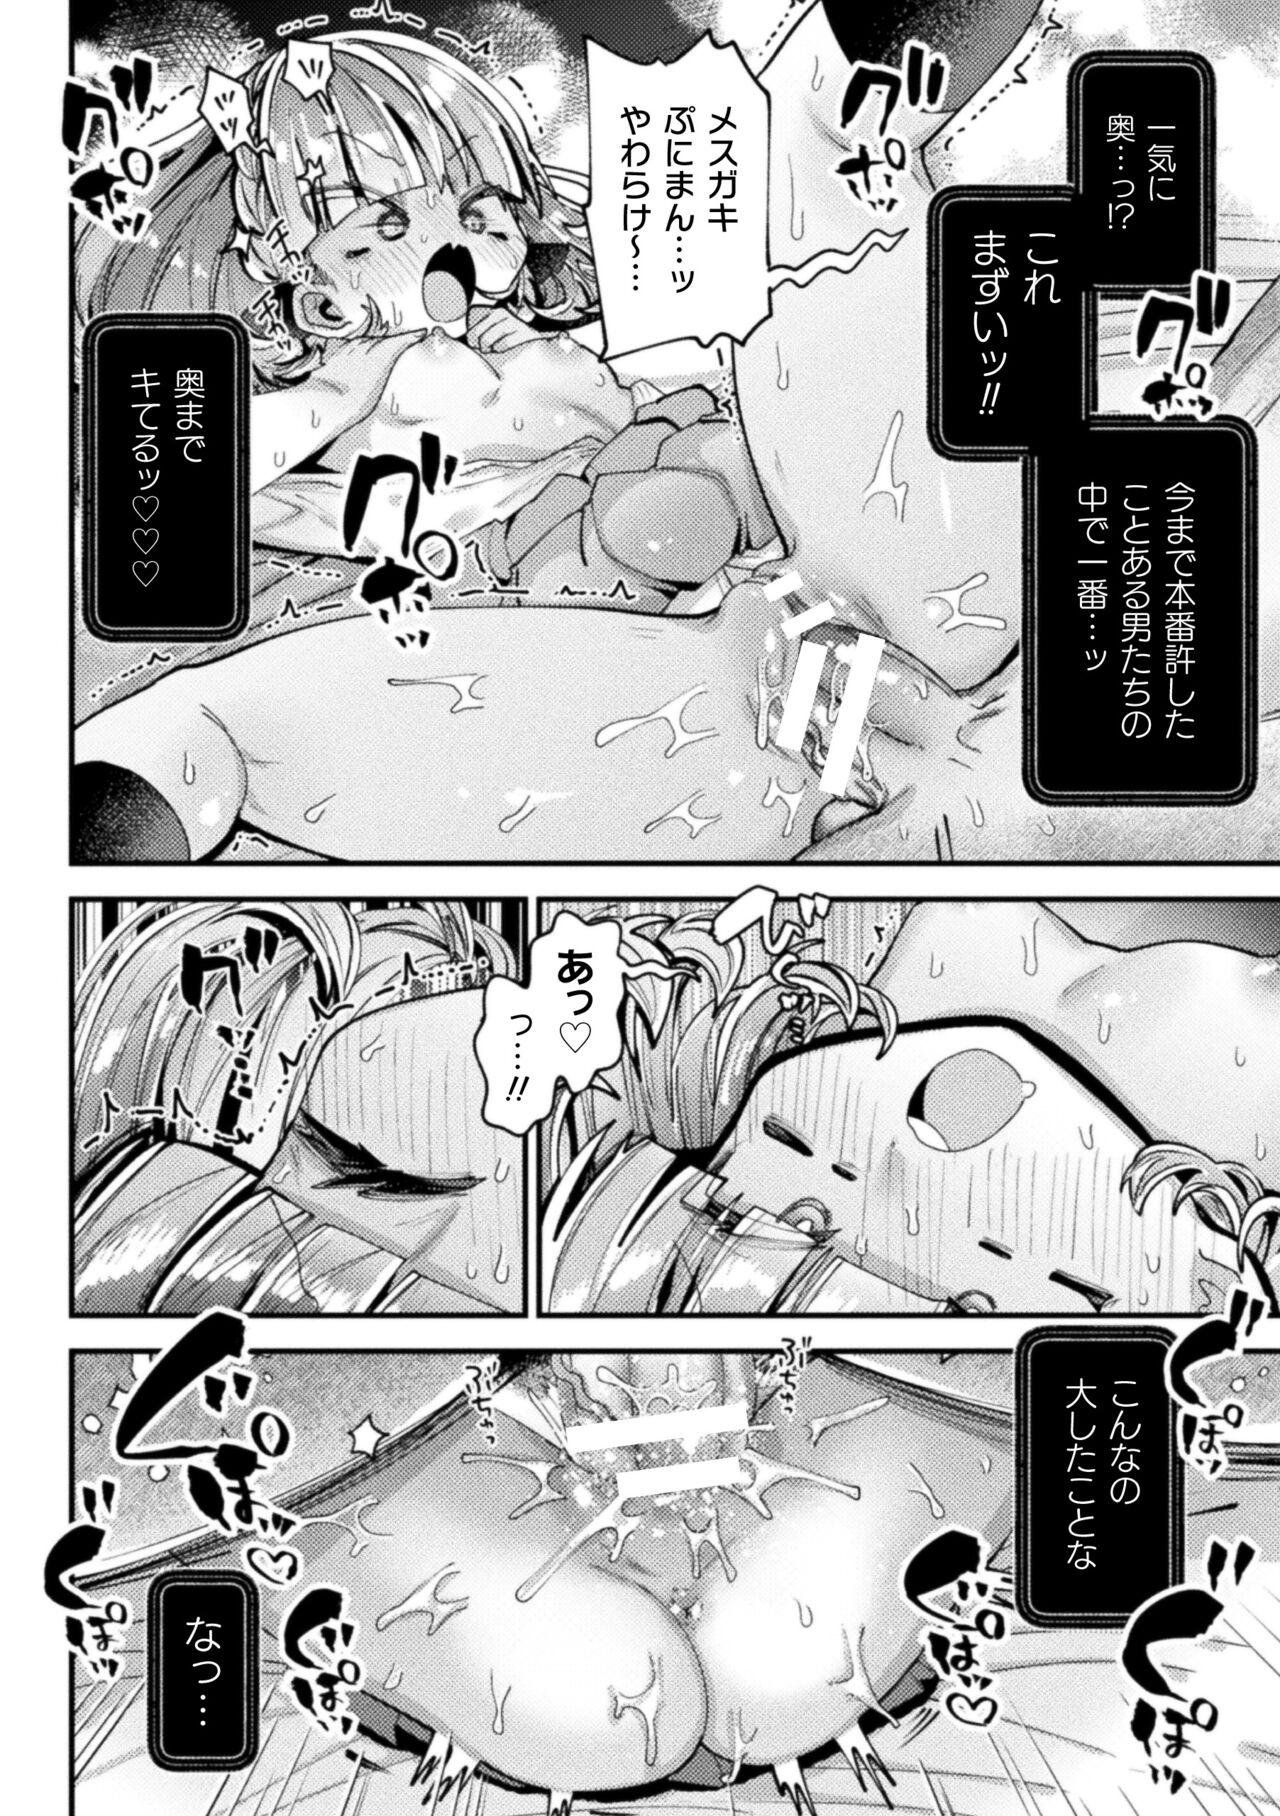 Nijigen komikku magajin mesugakipapa katsu seisai o teate wa niku bō ikkatsu wakara se harai Vol. 1 61